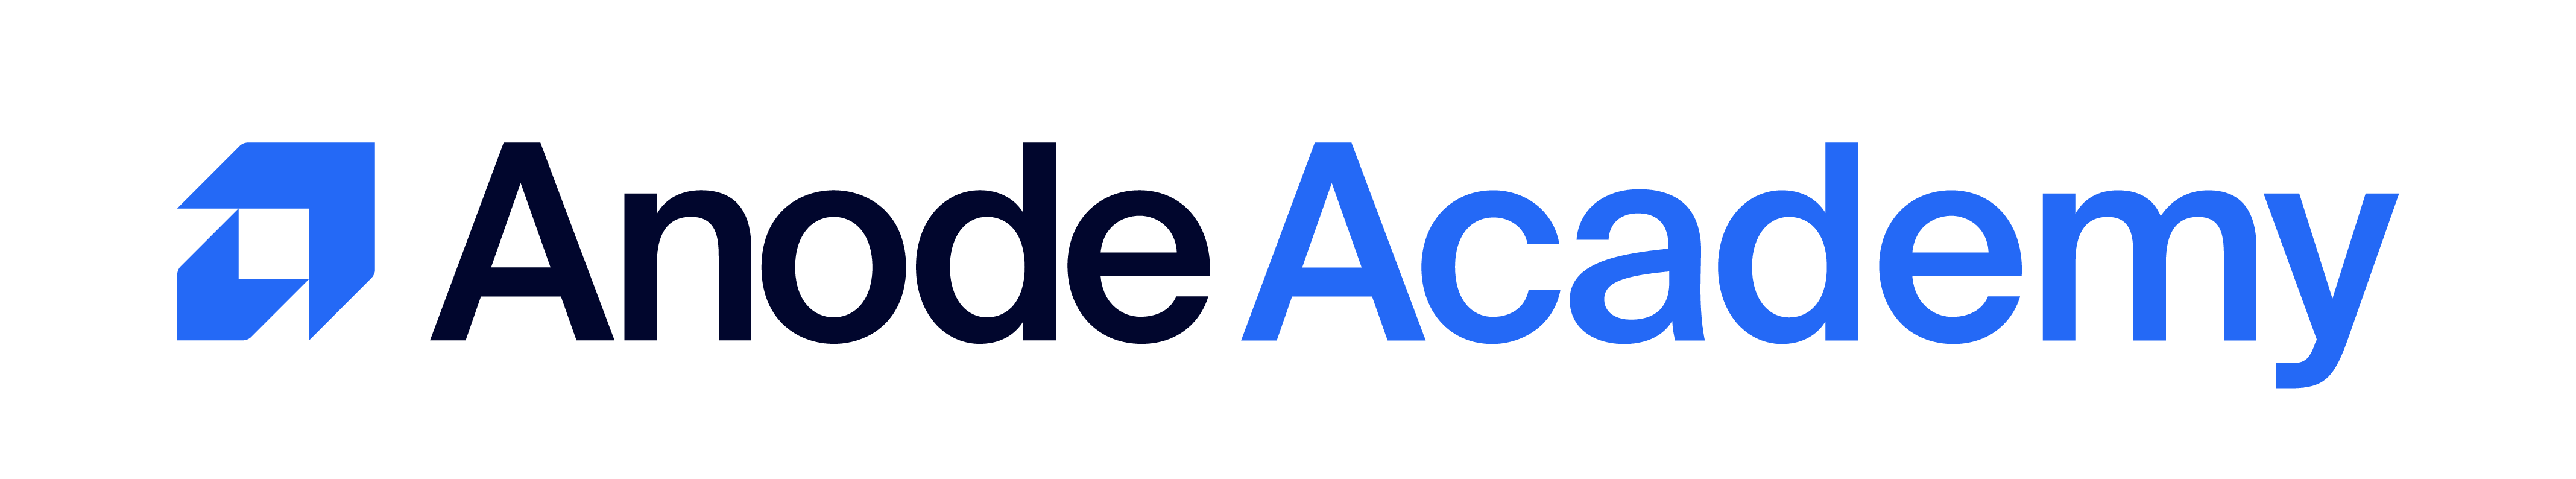 Anode Academy AS logo